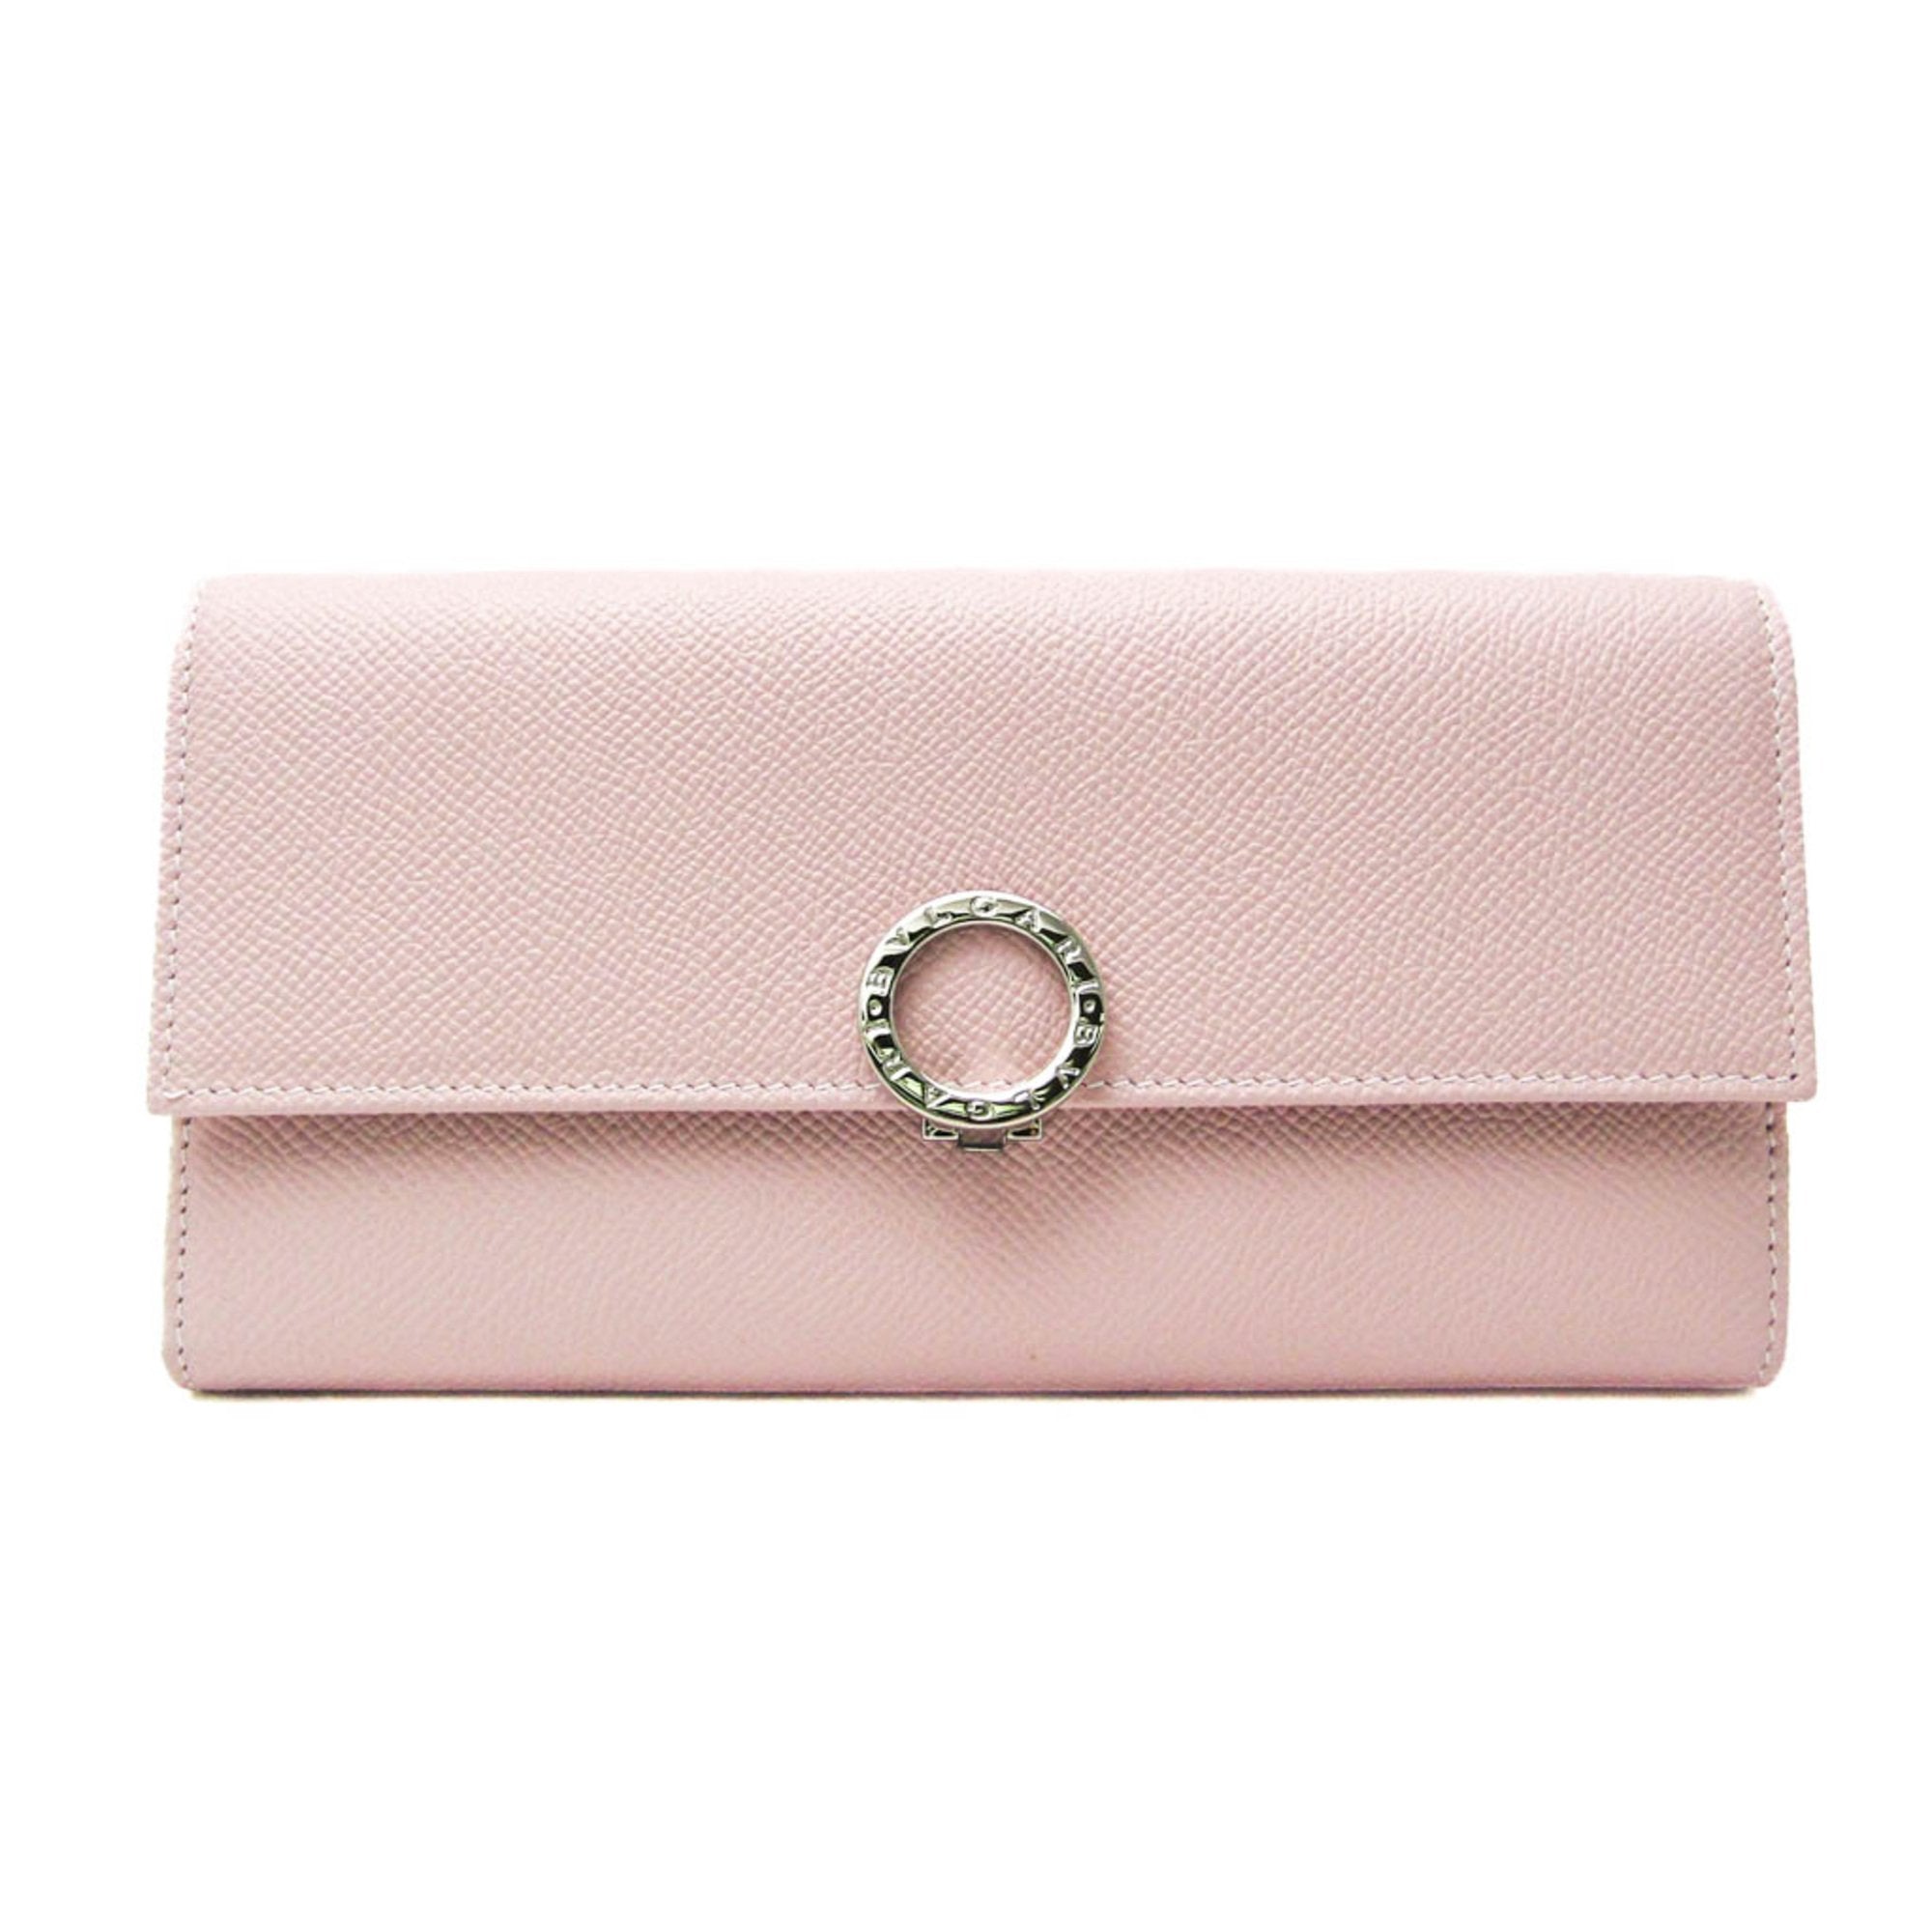 30417 Women's Leather Long Wallet [bi-fold] Light Pink